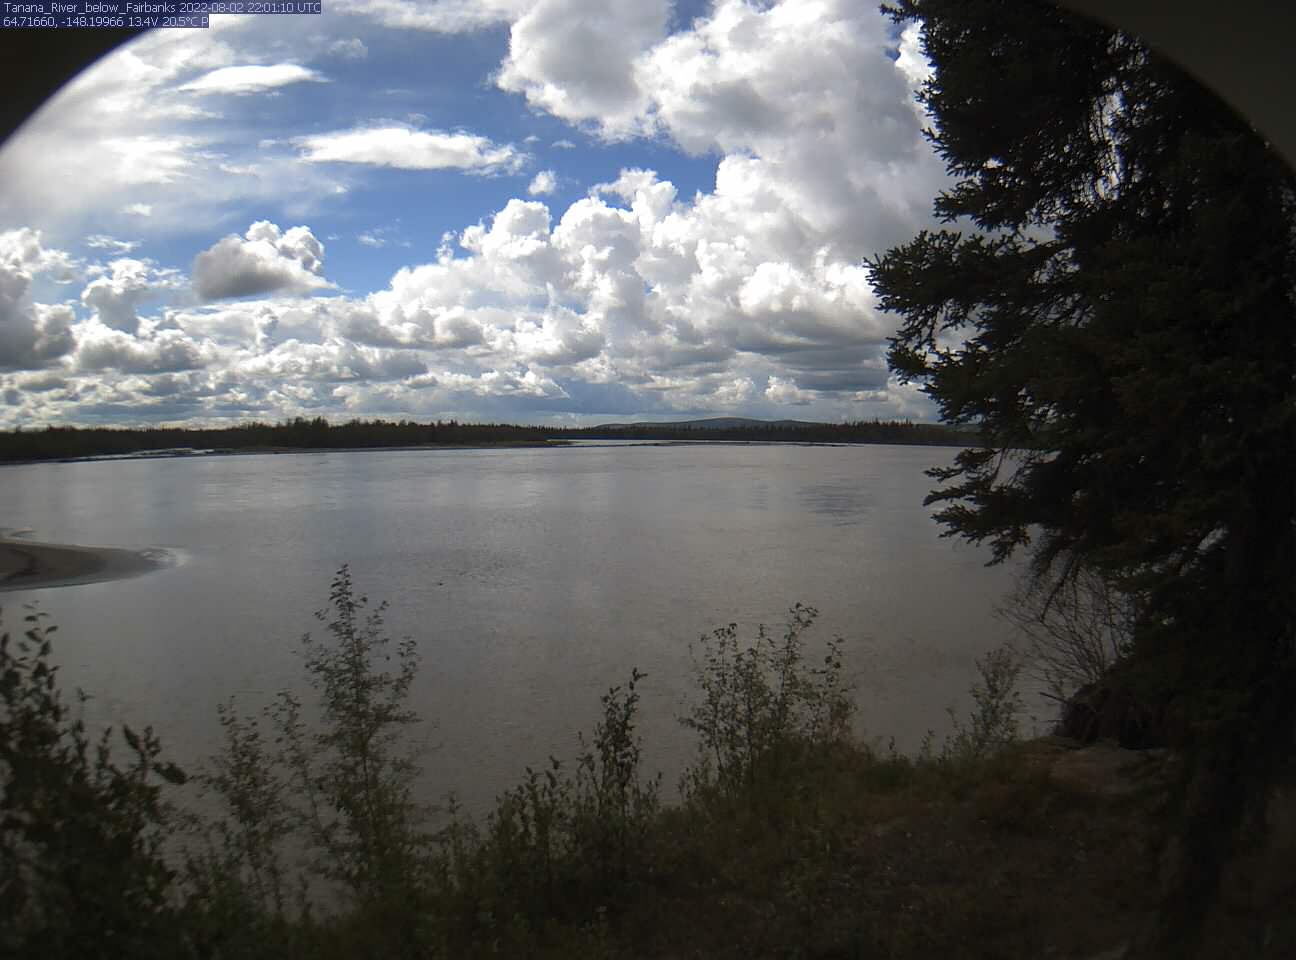 Tanana_River_below_Fairbanks_20220802220111.jpg